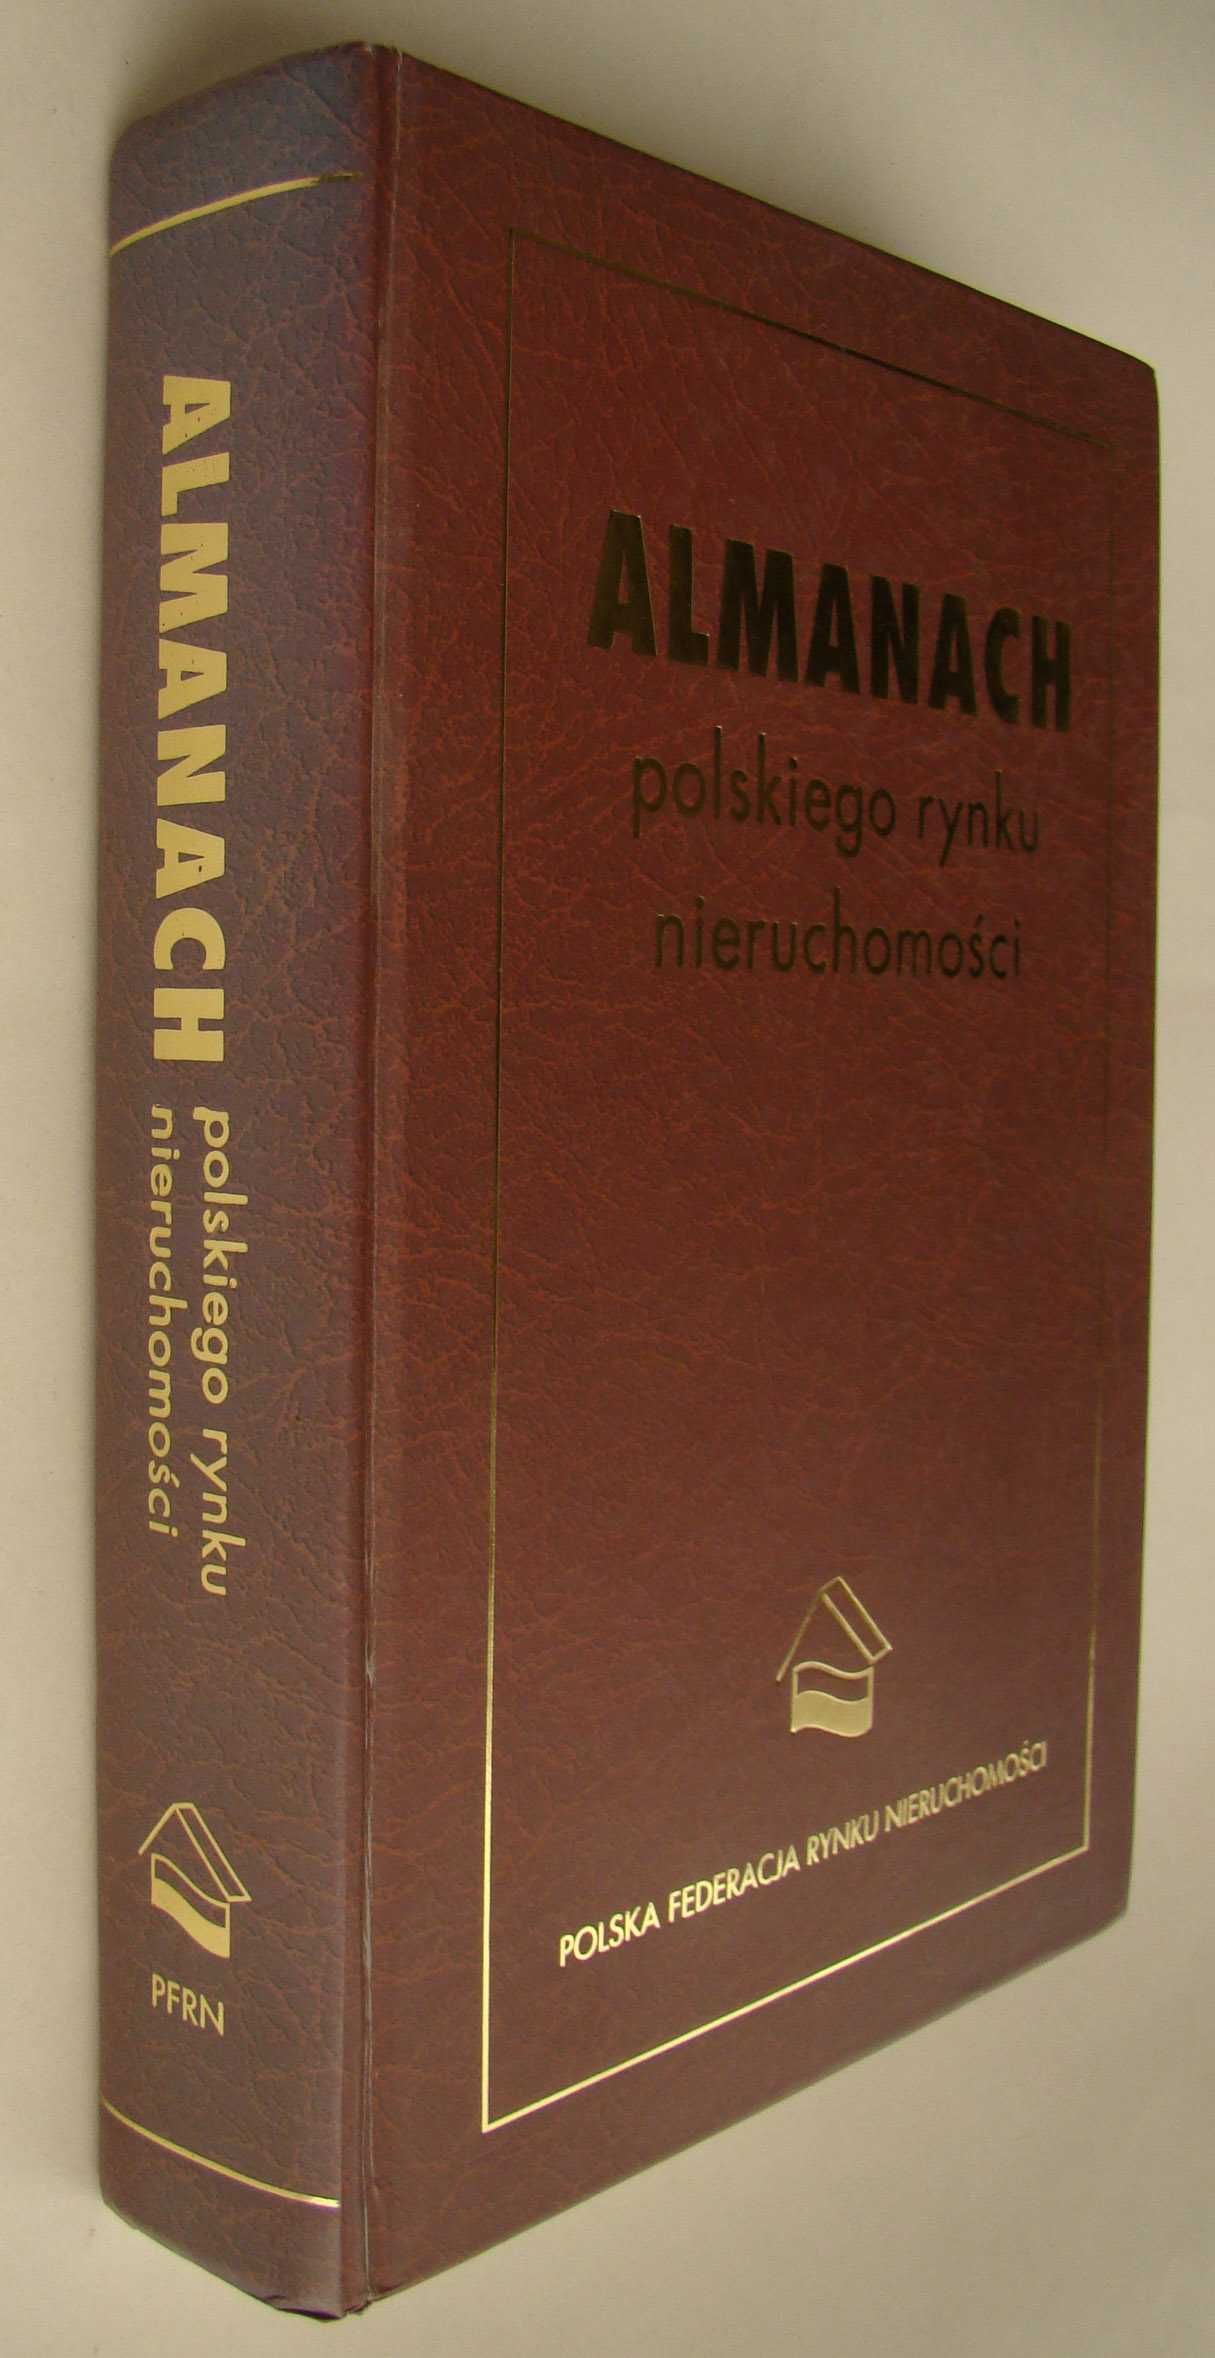 Almanach Polskiego Rynku Nieruchomości - 2003